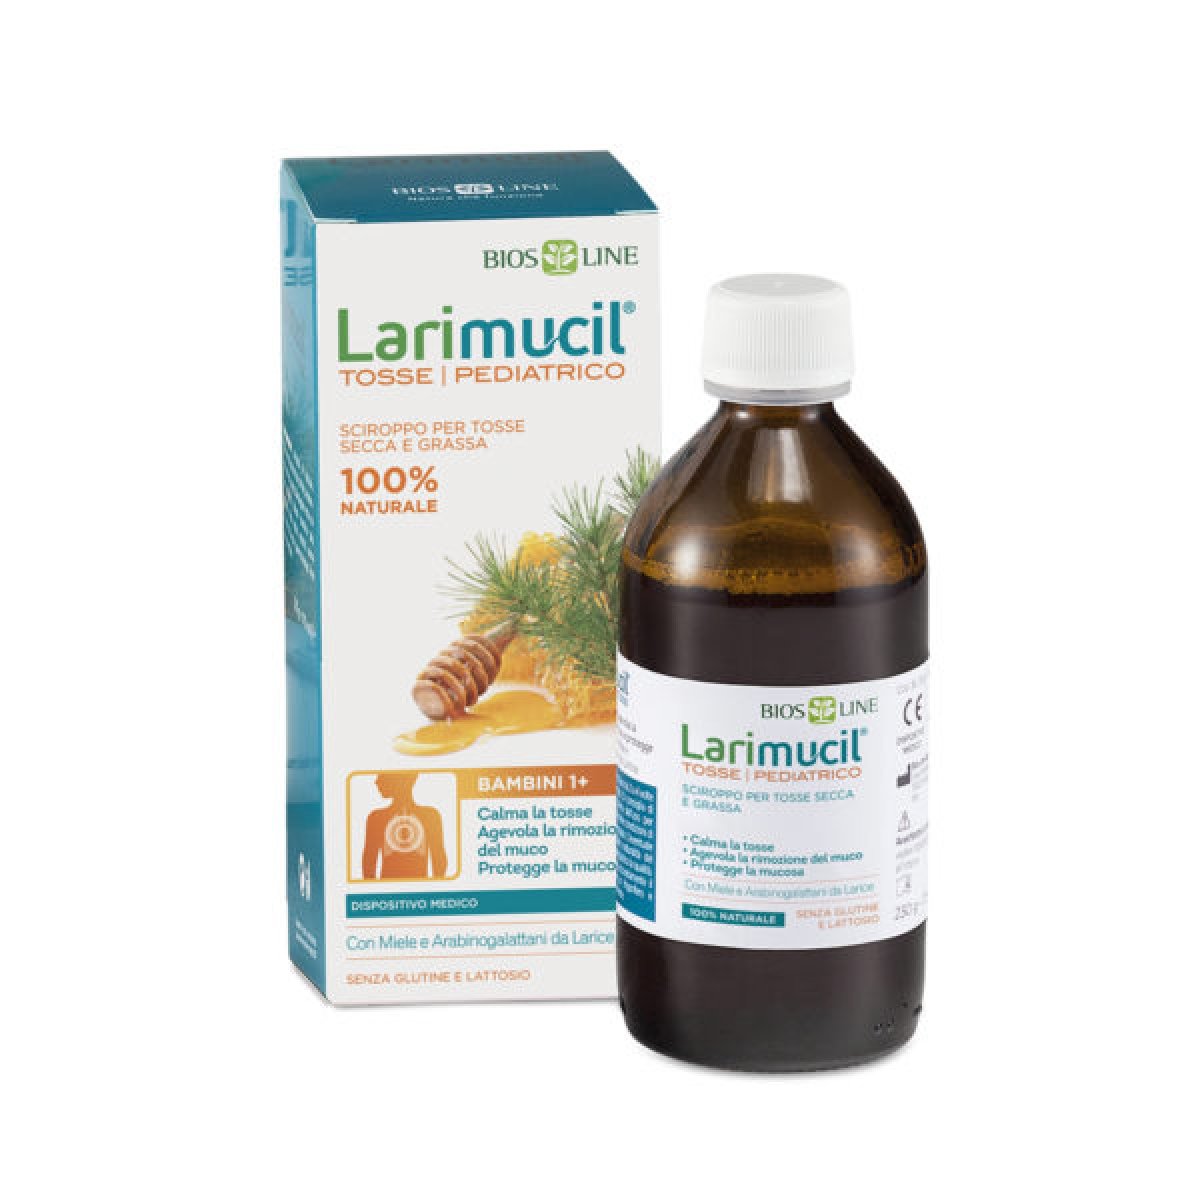 Larimucil® Tosse Pediatrico -  Bios Line Per calmare la tosse secca e grassa, proteggendo la mucosa, e agevolare la rimozione del muco. Sciroppo per bambini dai 3 ai 12 anni. Flacone da 175 ml